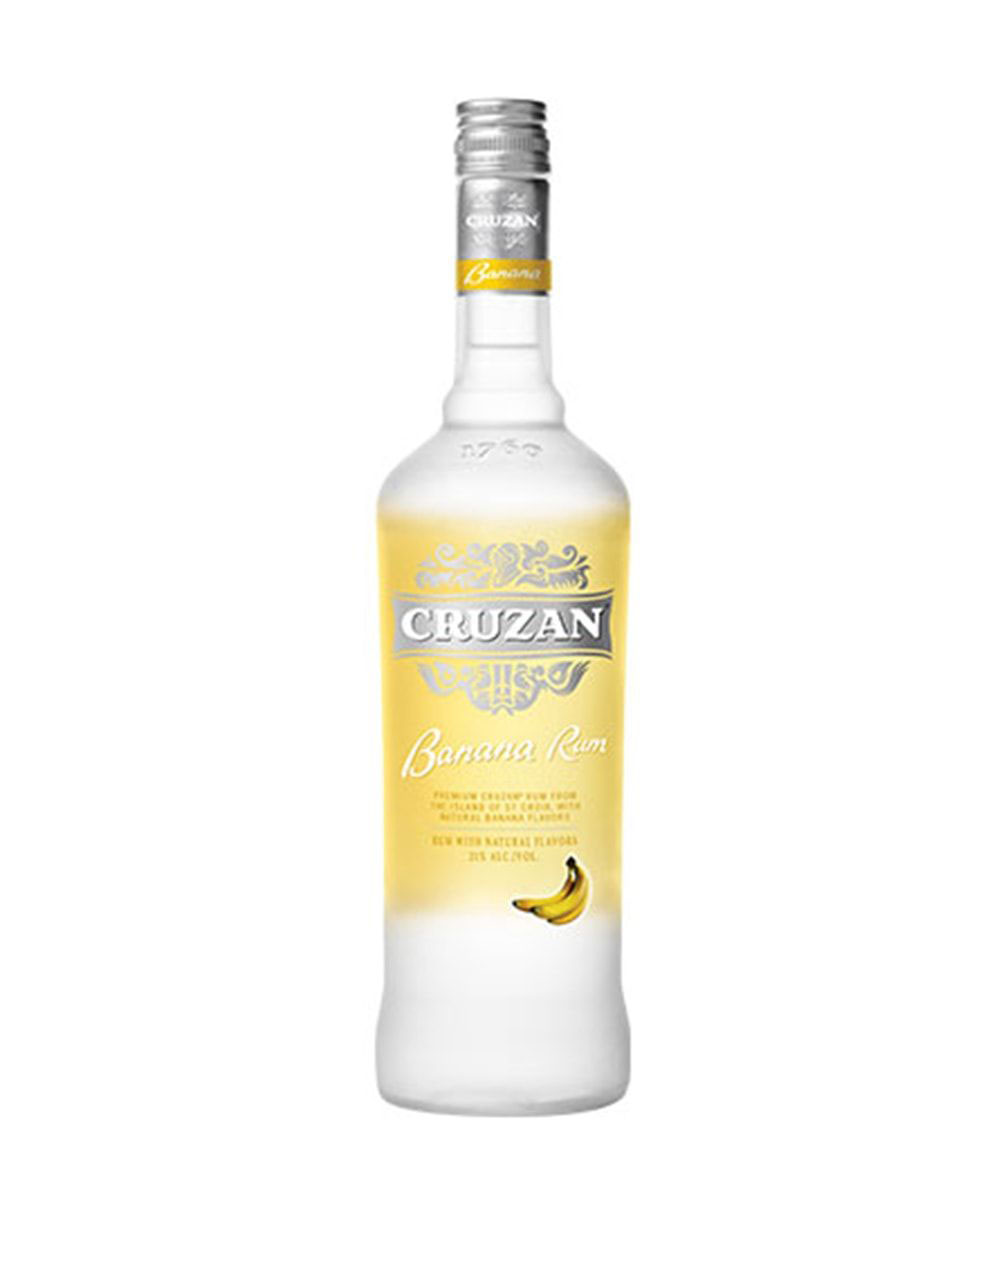 Vizcaya Cristal Rum